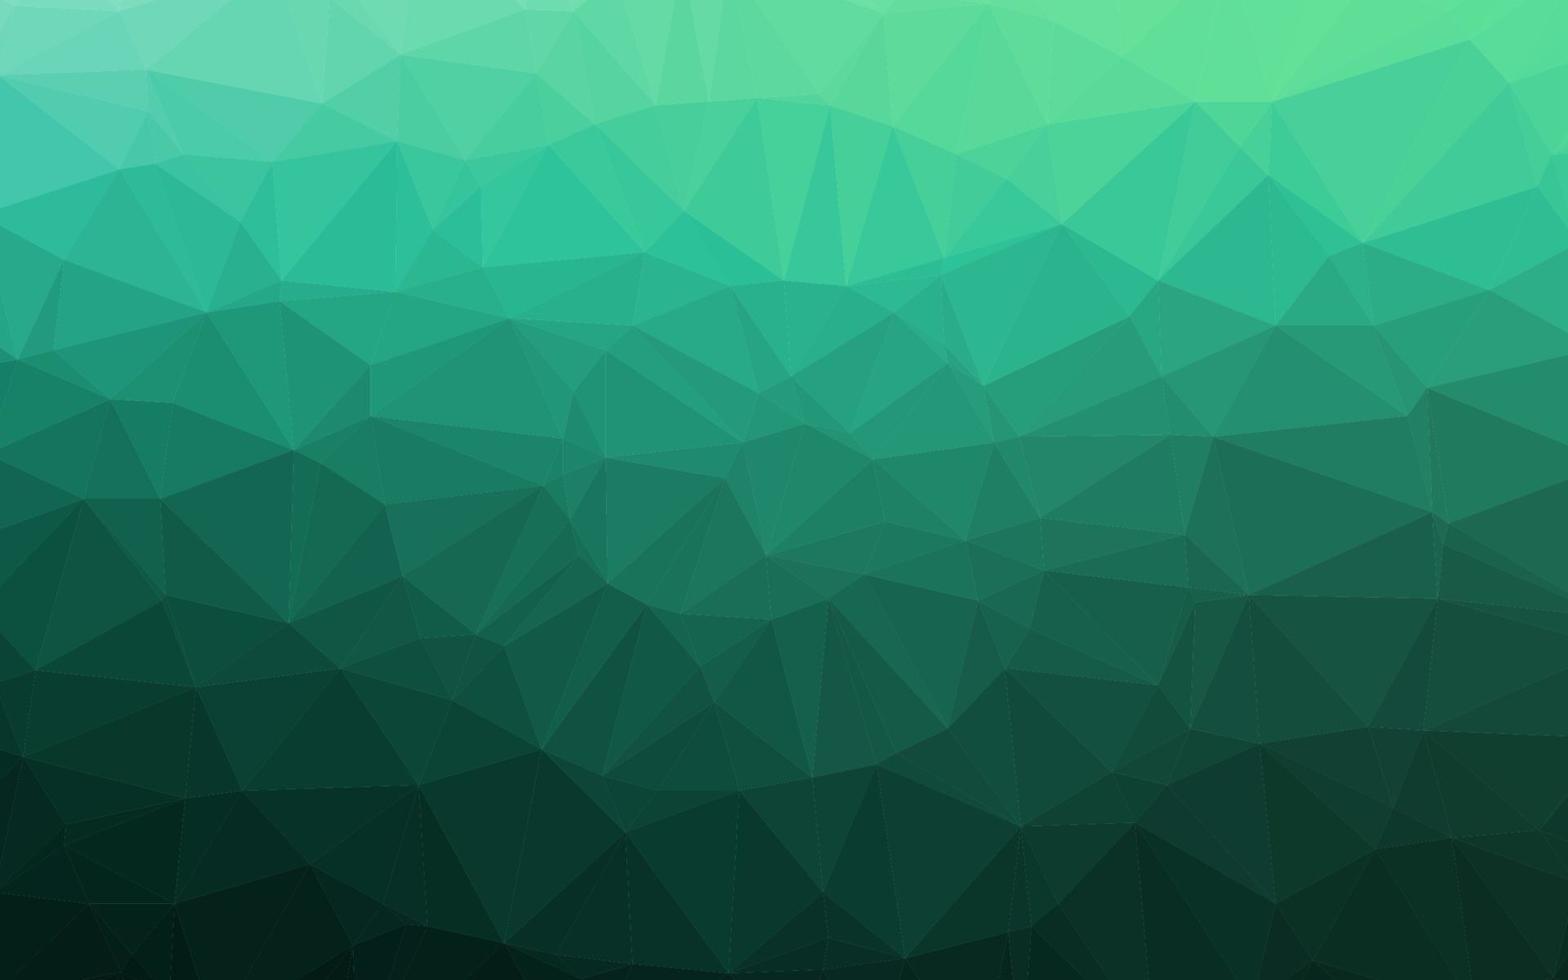 diseño abstracto del polígono del vector verde claro.